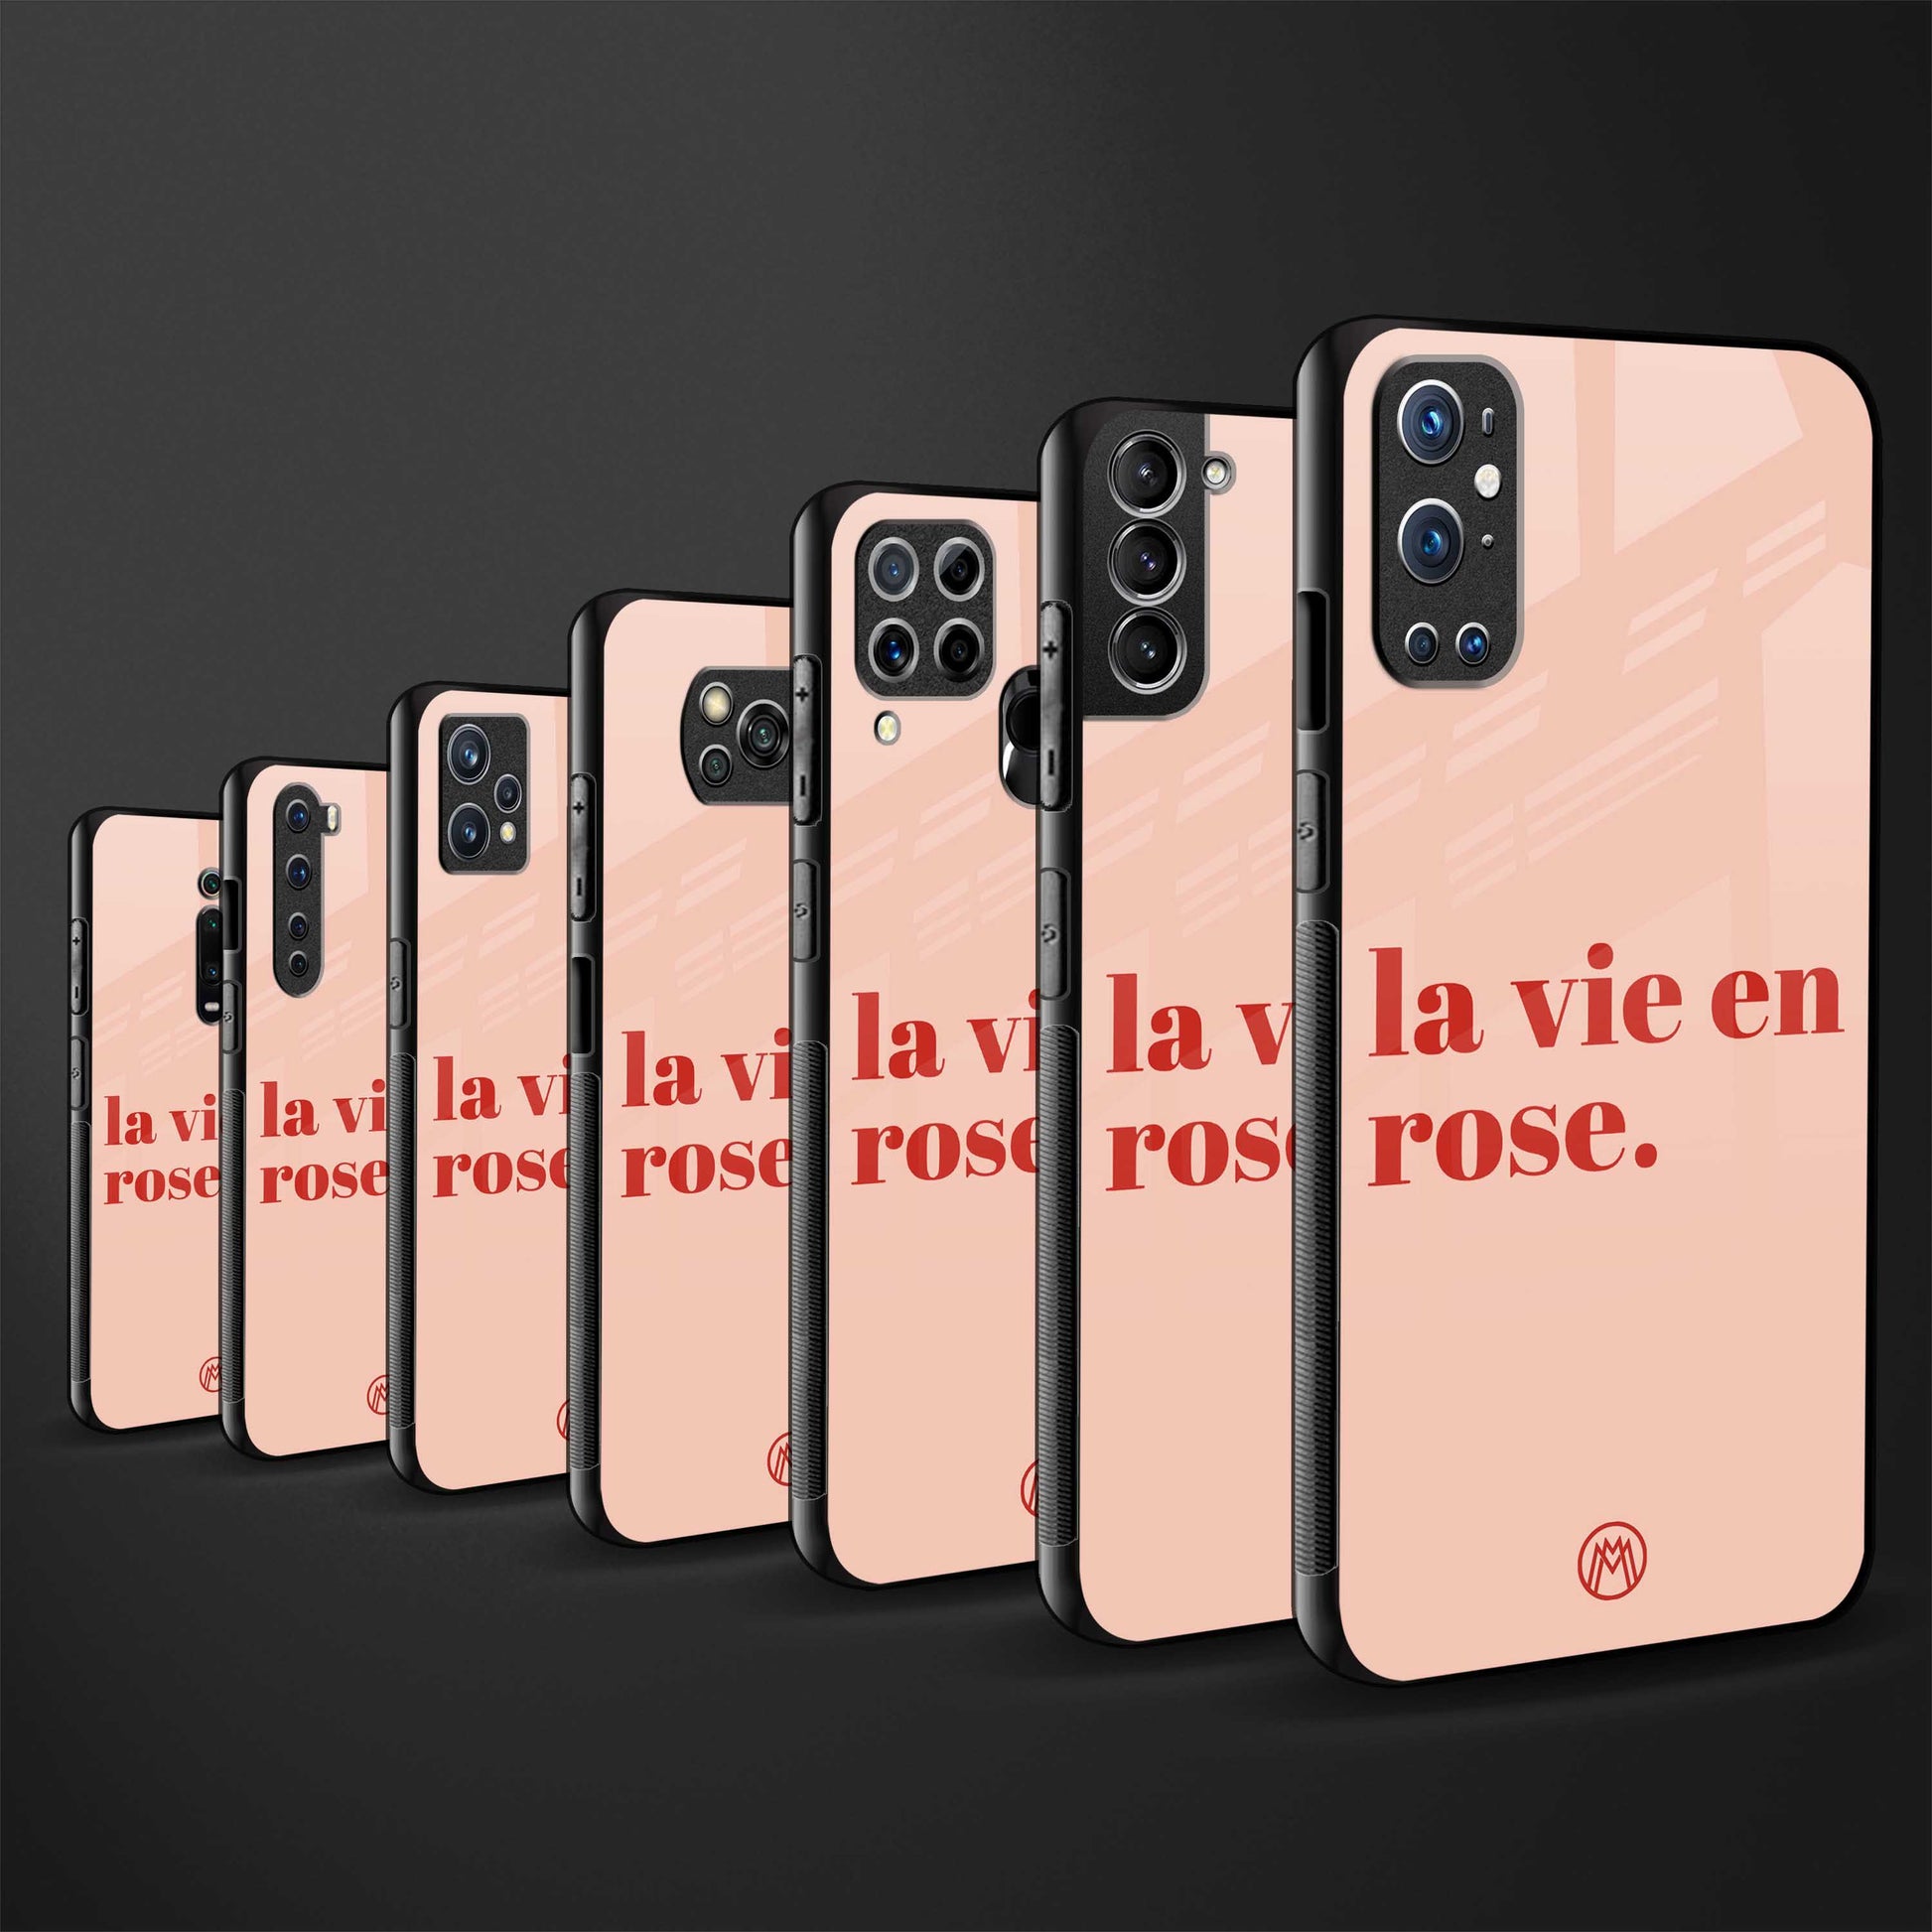 la vie en rose quote glass case for iphone xs image-3